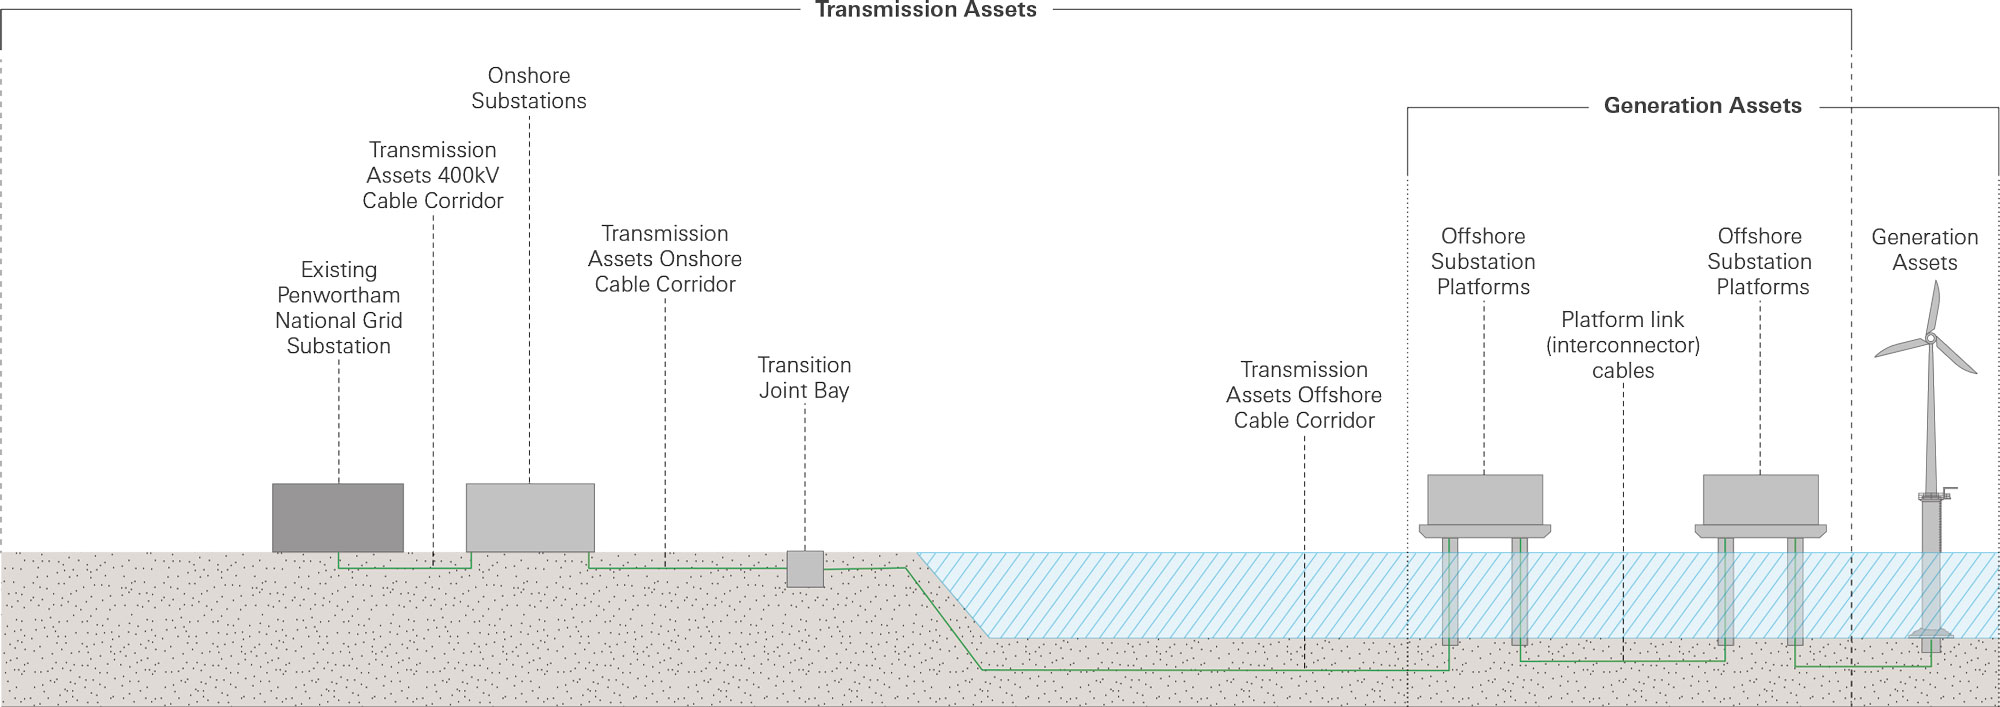 Transmission Assets